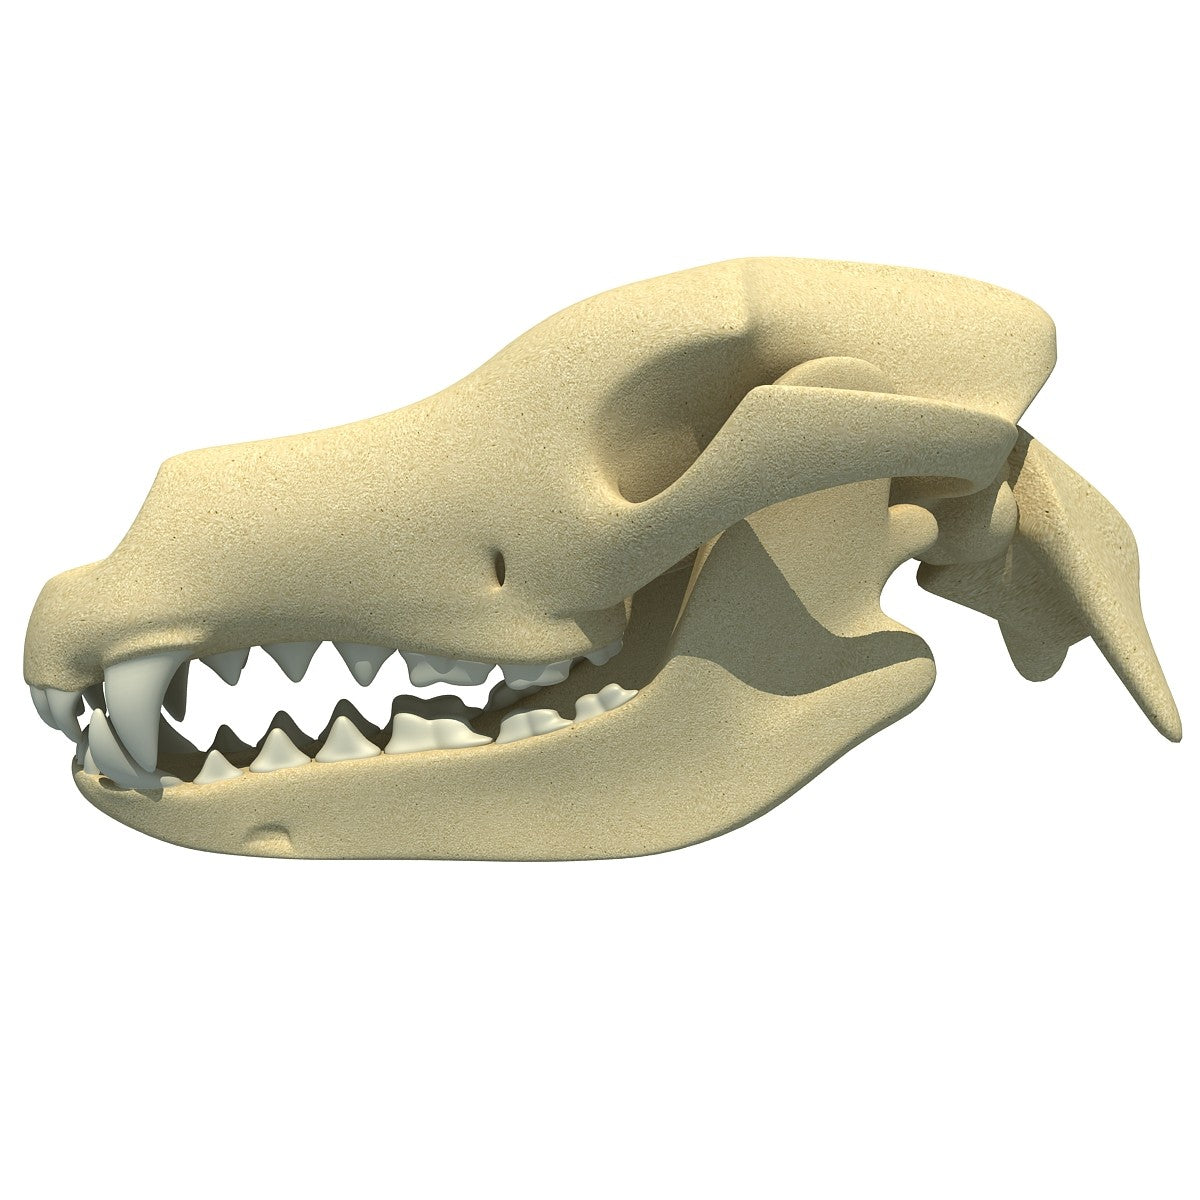 Dog Skull 3D Model